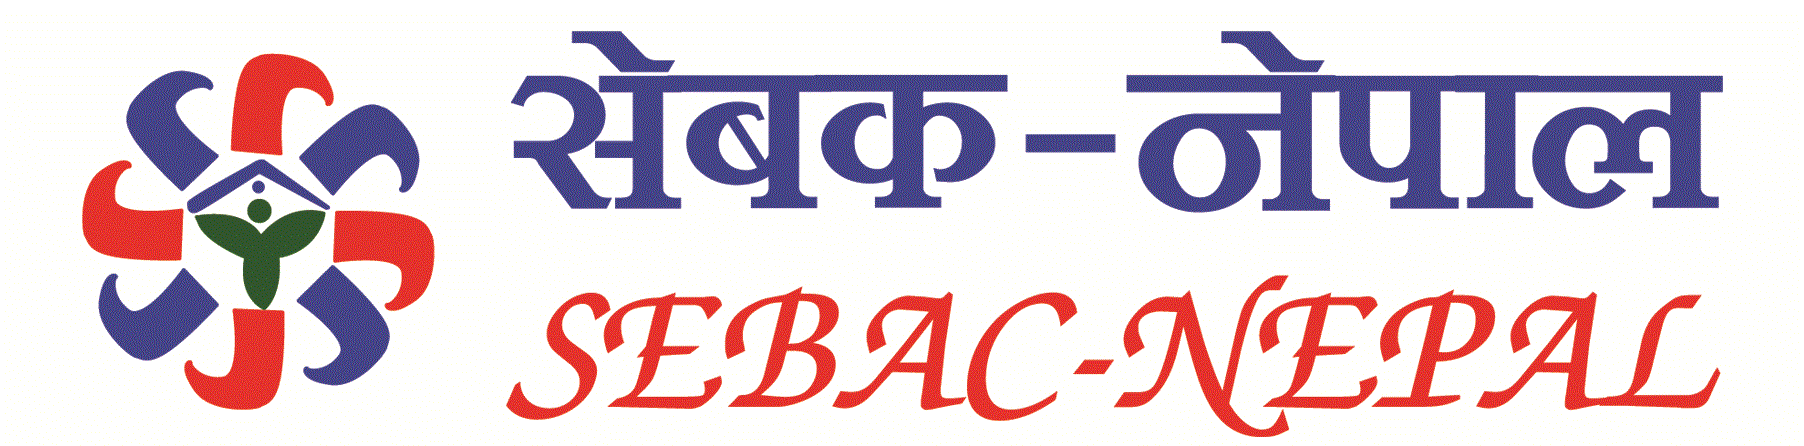 SEBAC-Nepal - MHMPA Nepal